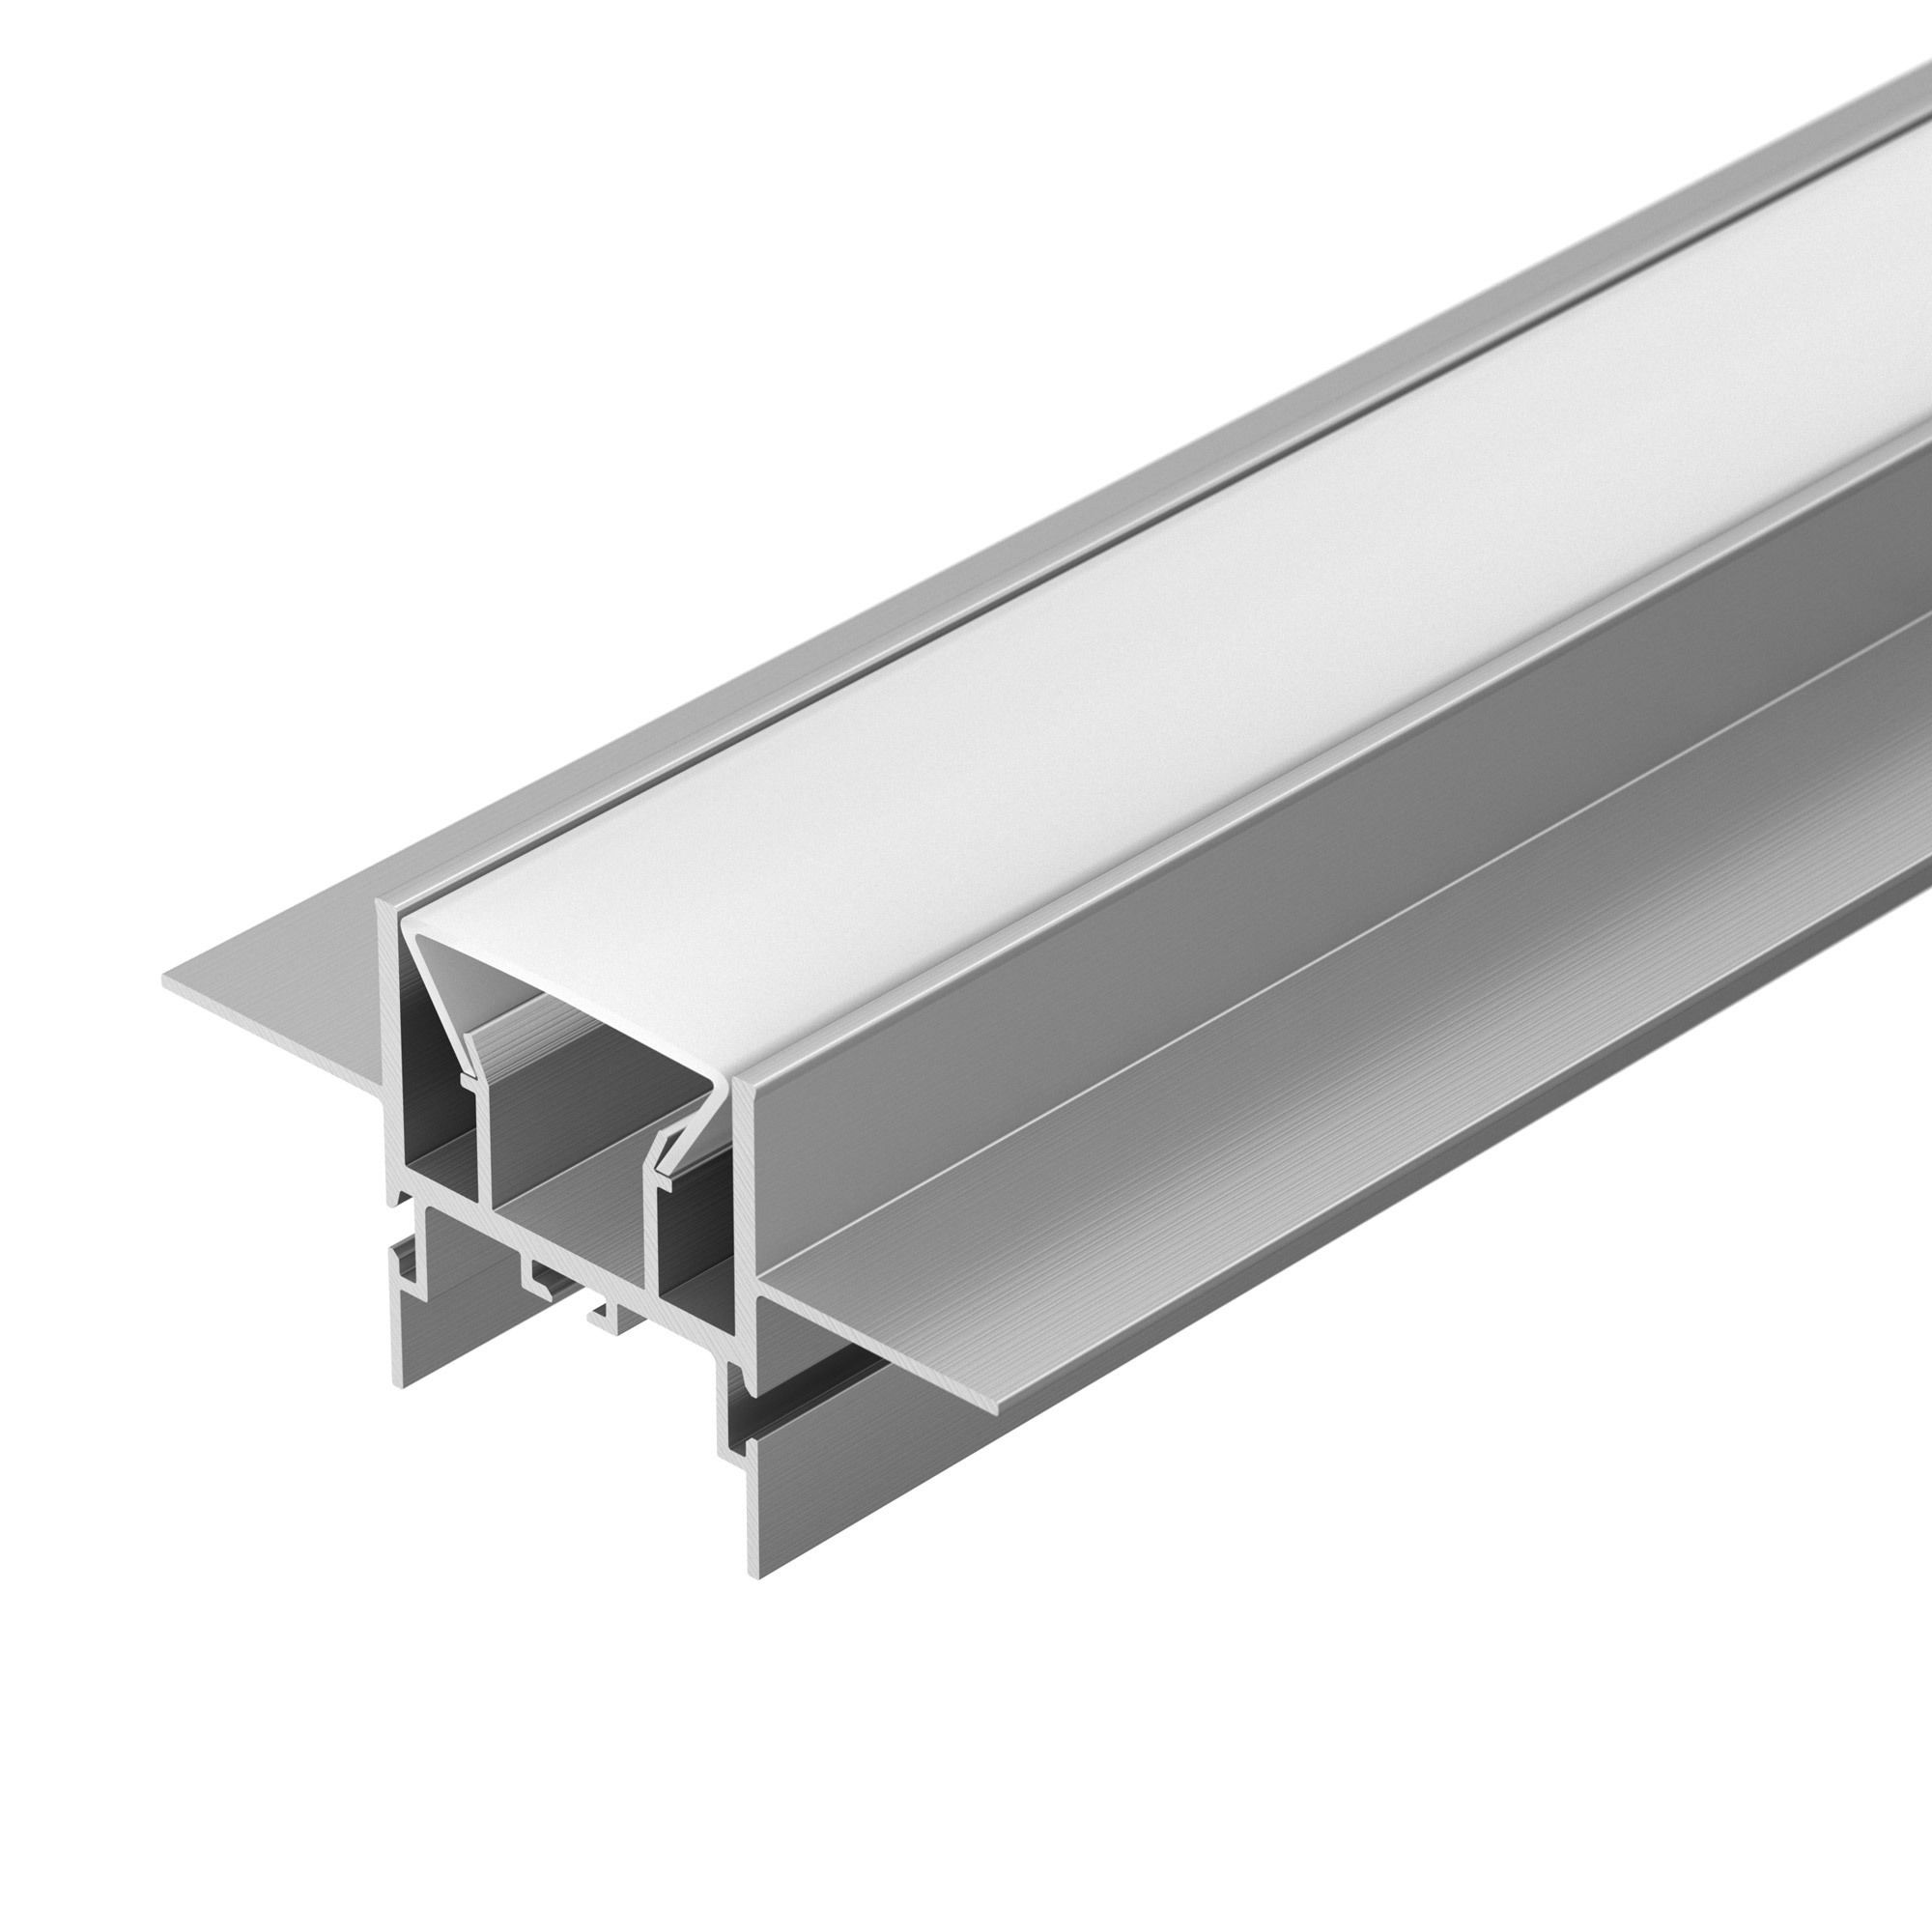 Профиль FOLED-CEIL-CENTER-3000 (Arlight, Алюминий) алюминиевый профиль ниши скрытого монтажа для гкл потолка alm 11681 pl b 2m